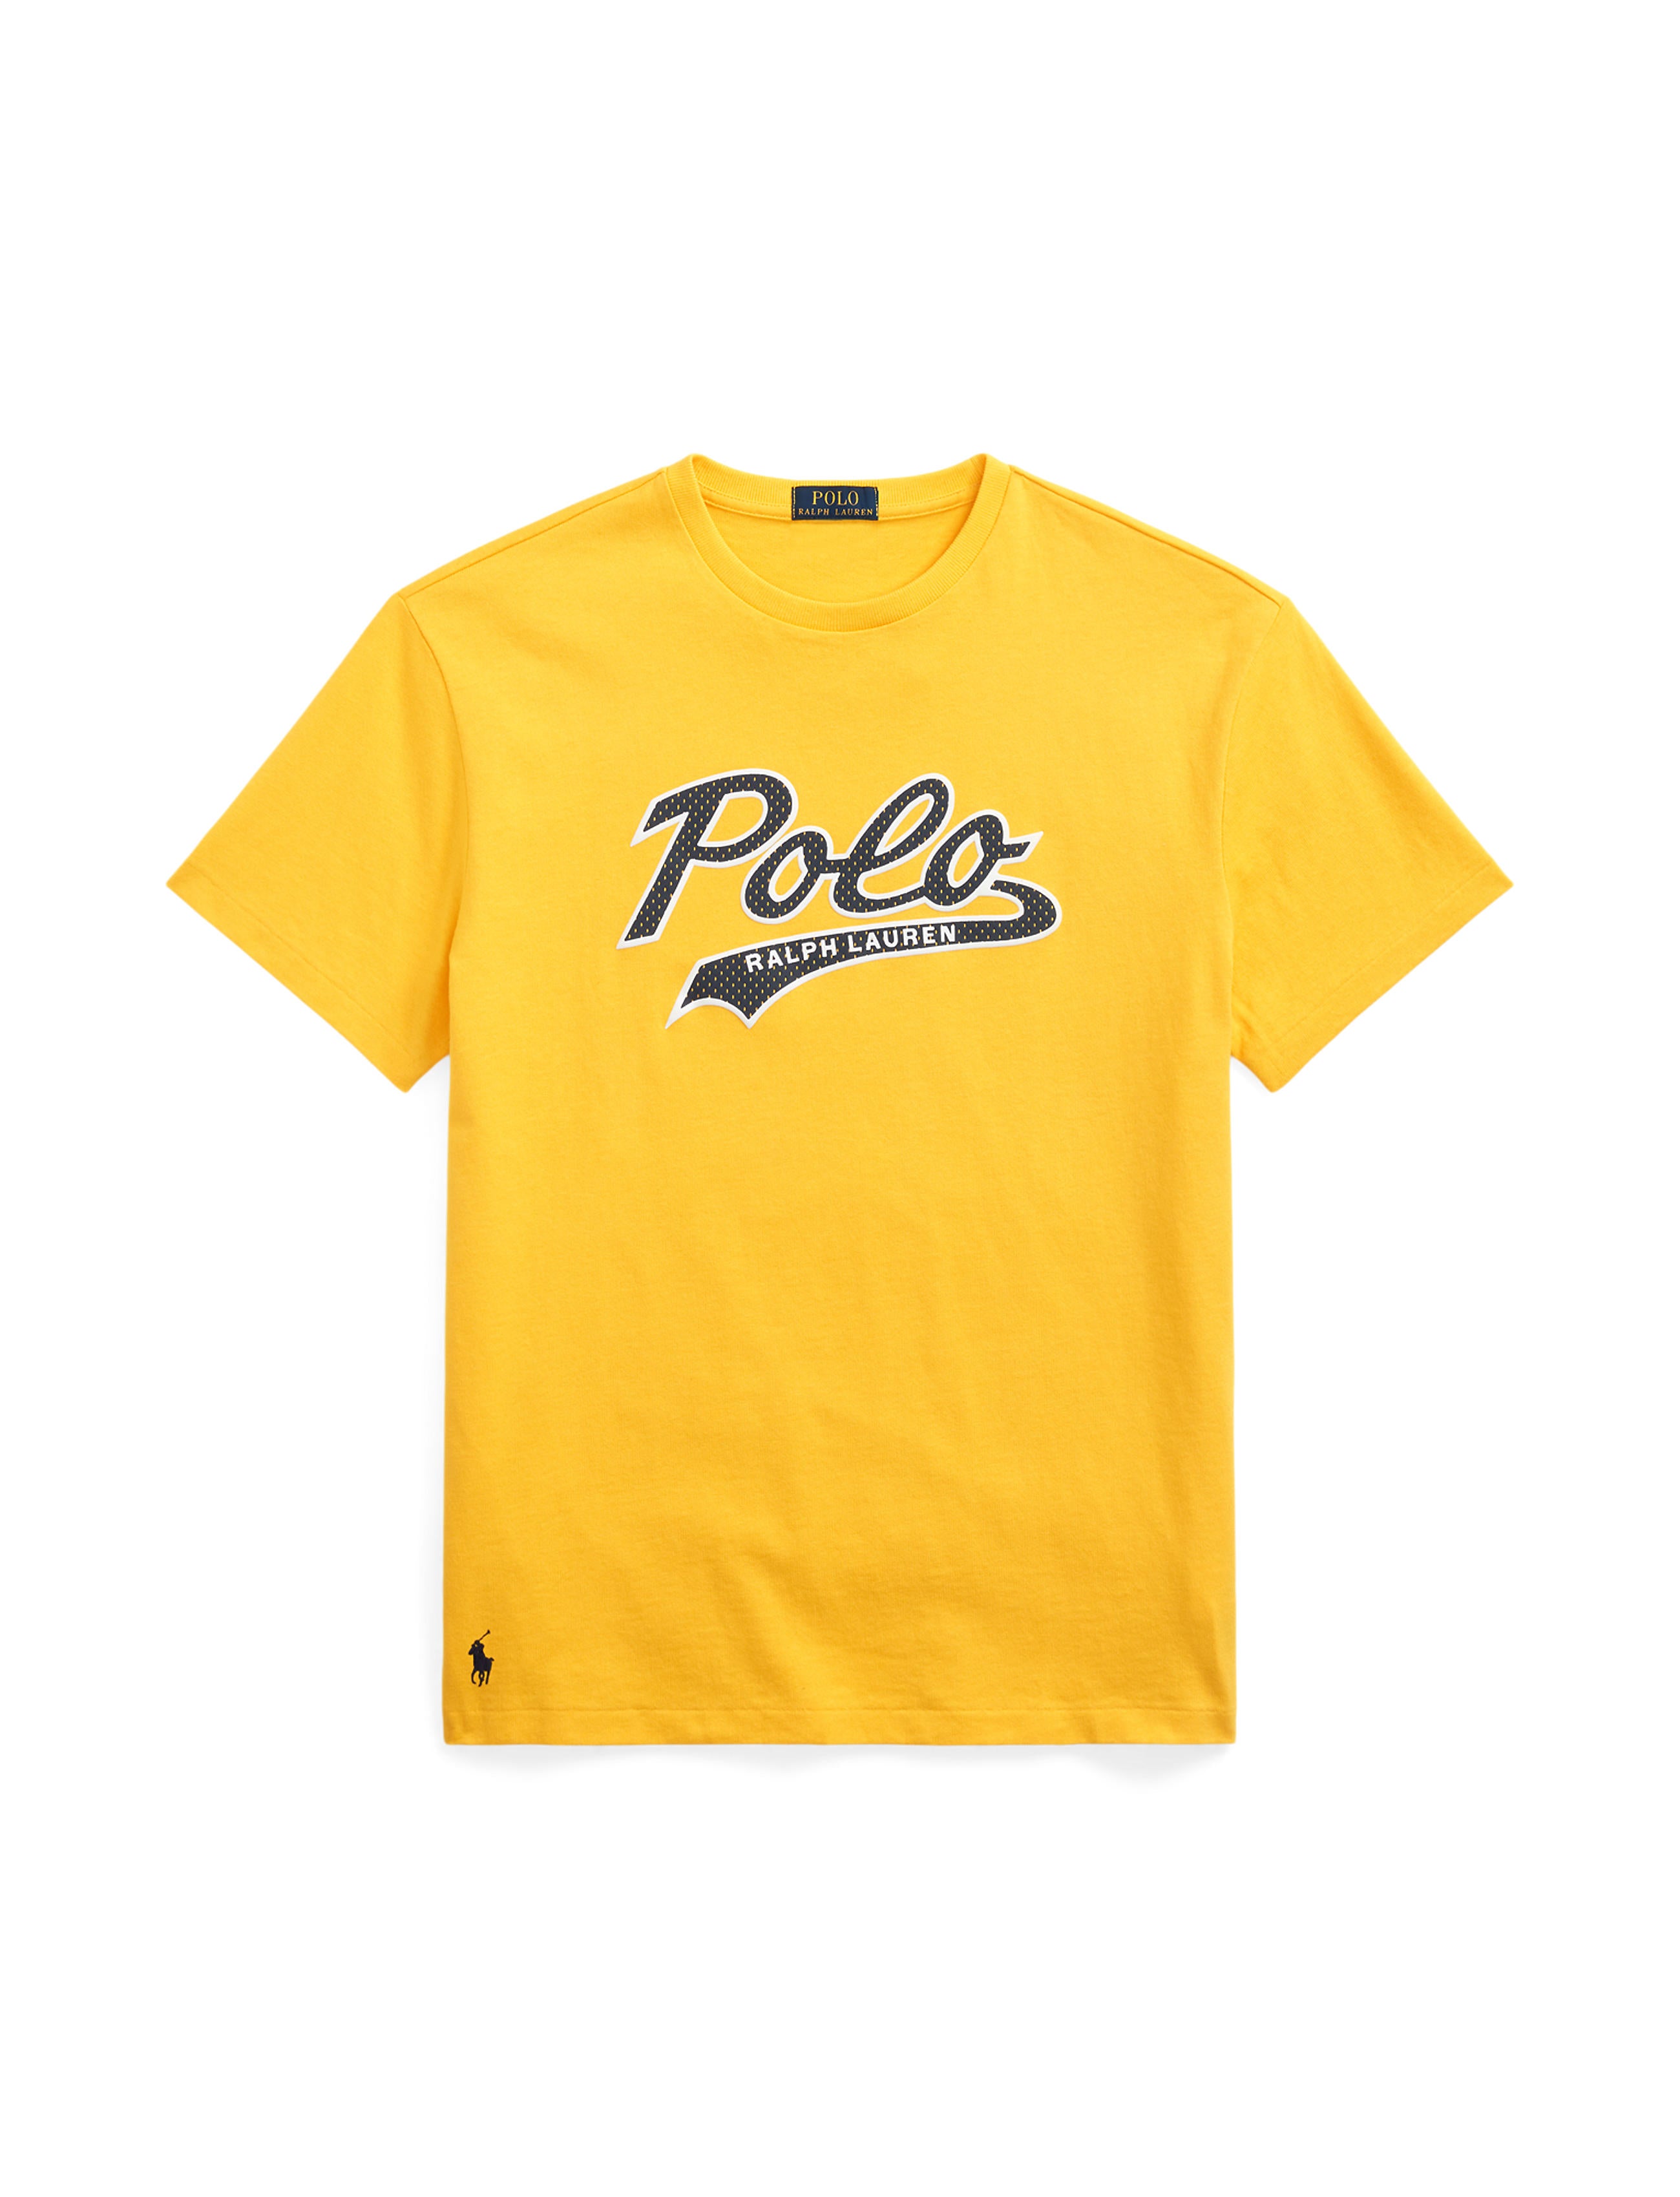 Polo Ralph Lauren Tee Shirt - Classics - Gold